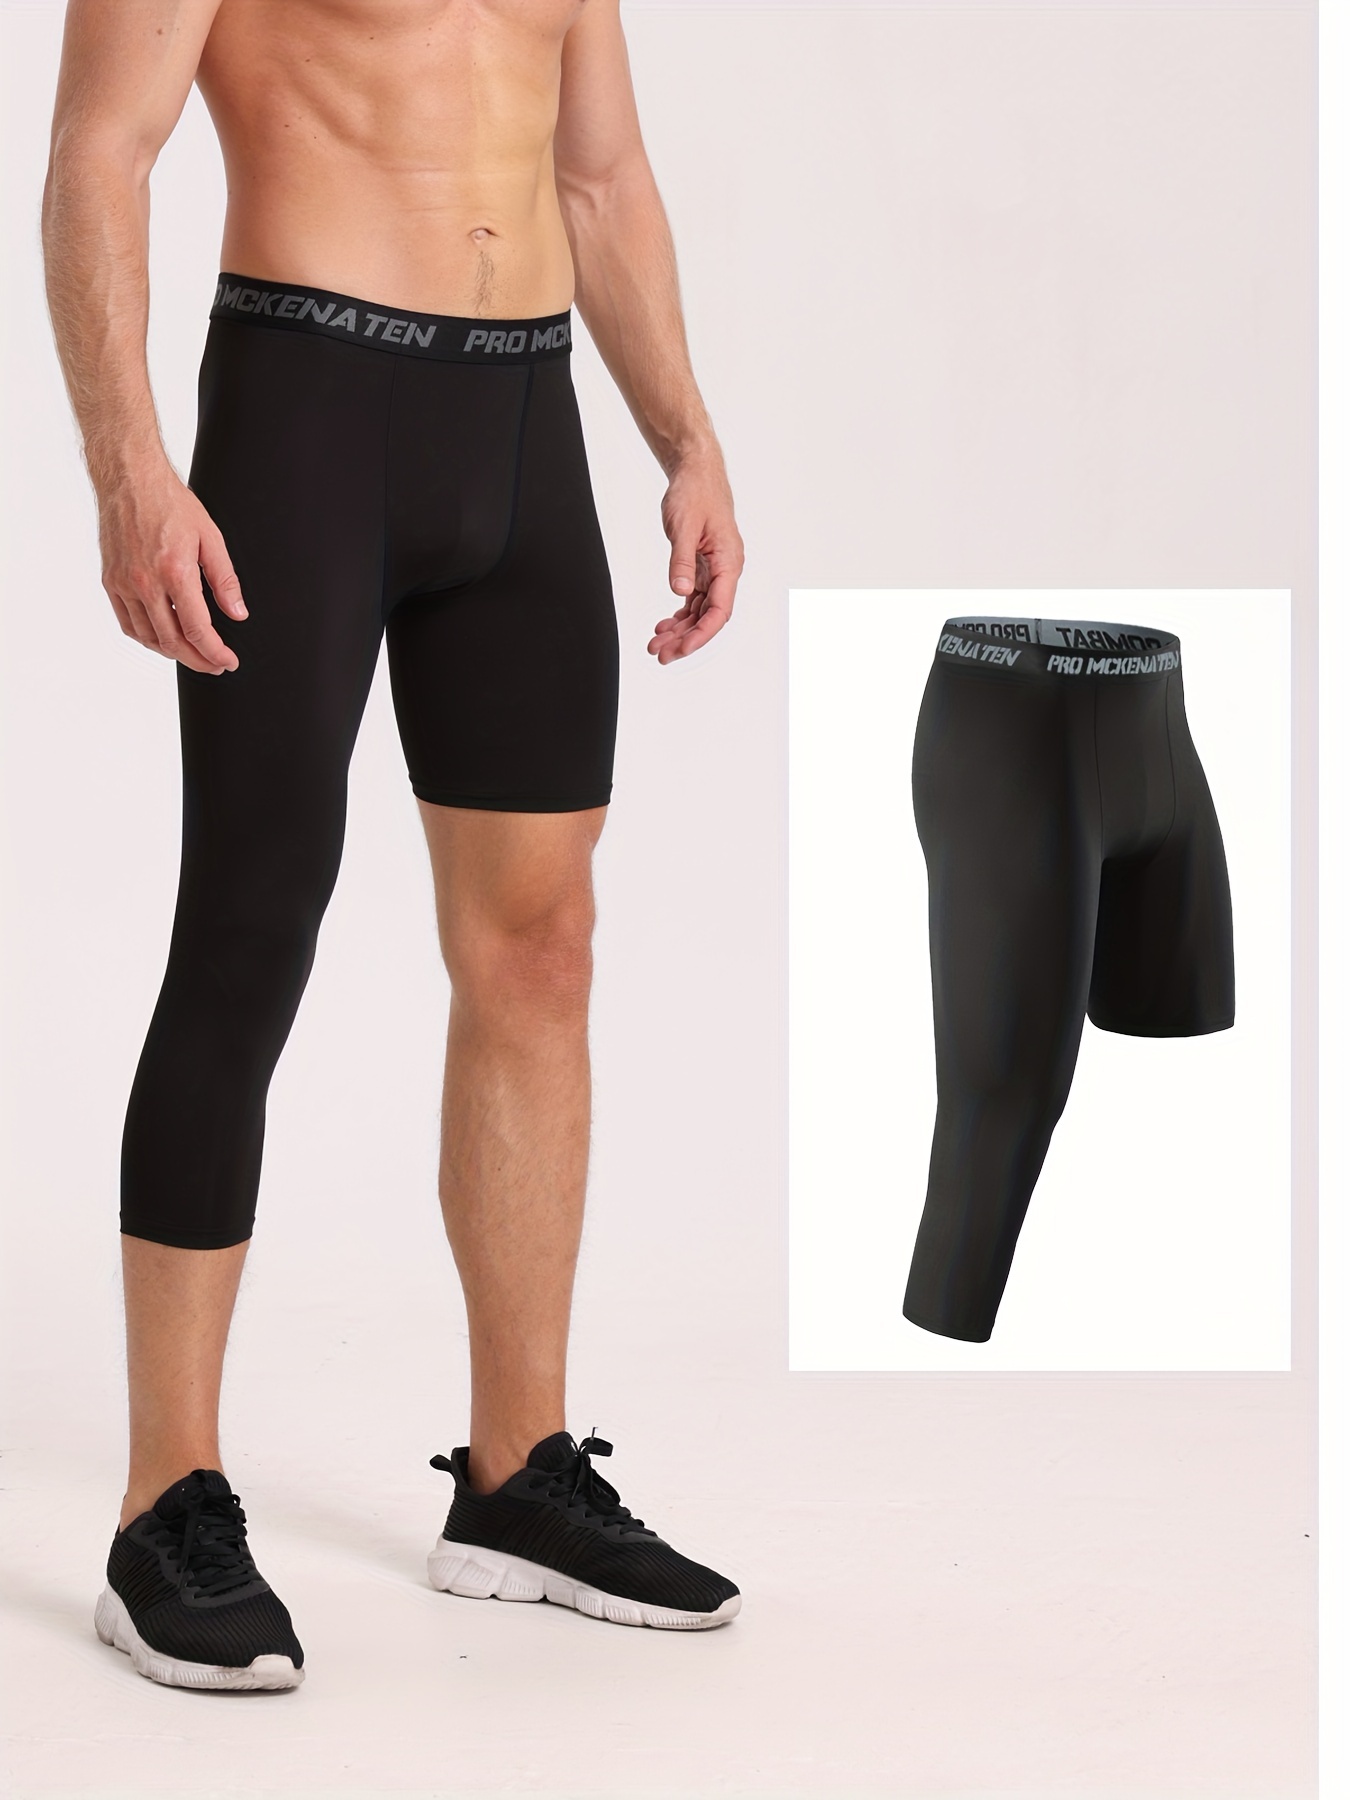 Men's 3/4 One Leg Solid Compression Capri Pants Active High - Temu